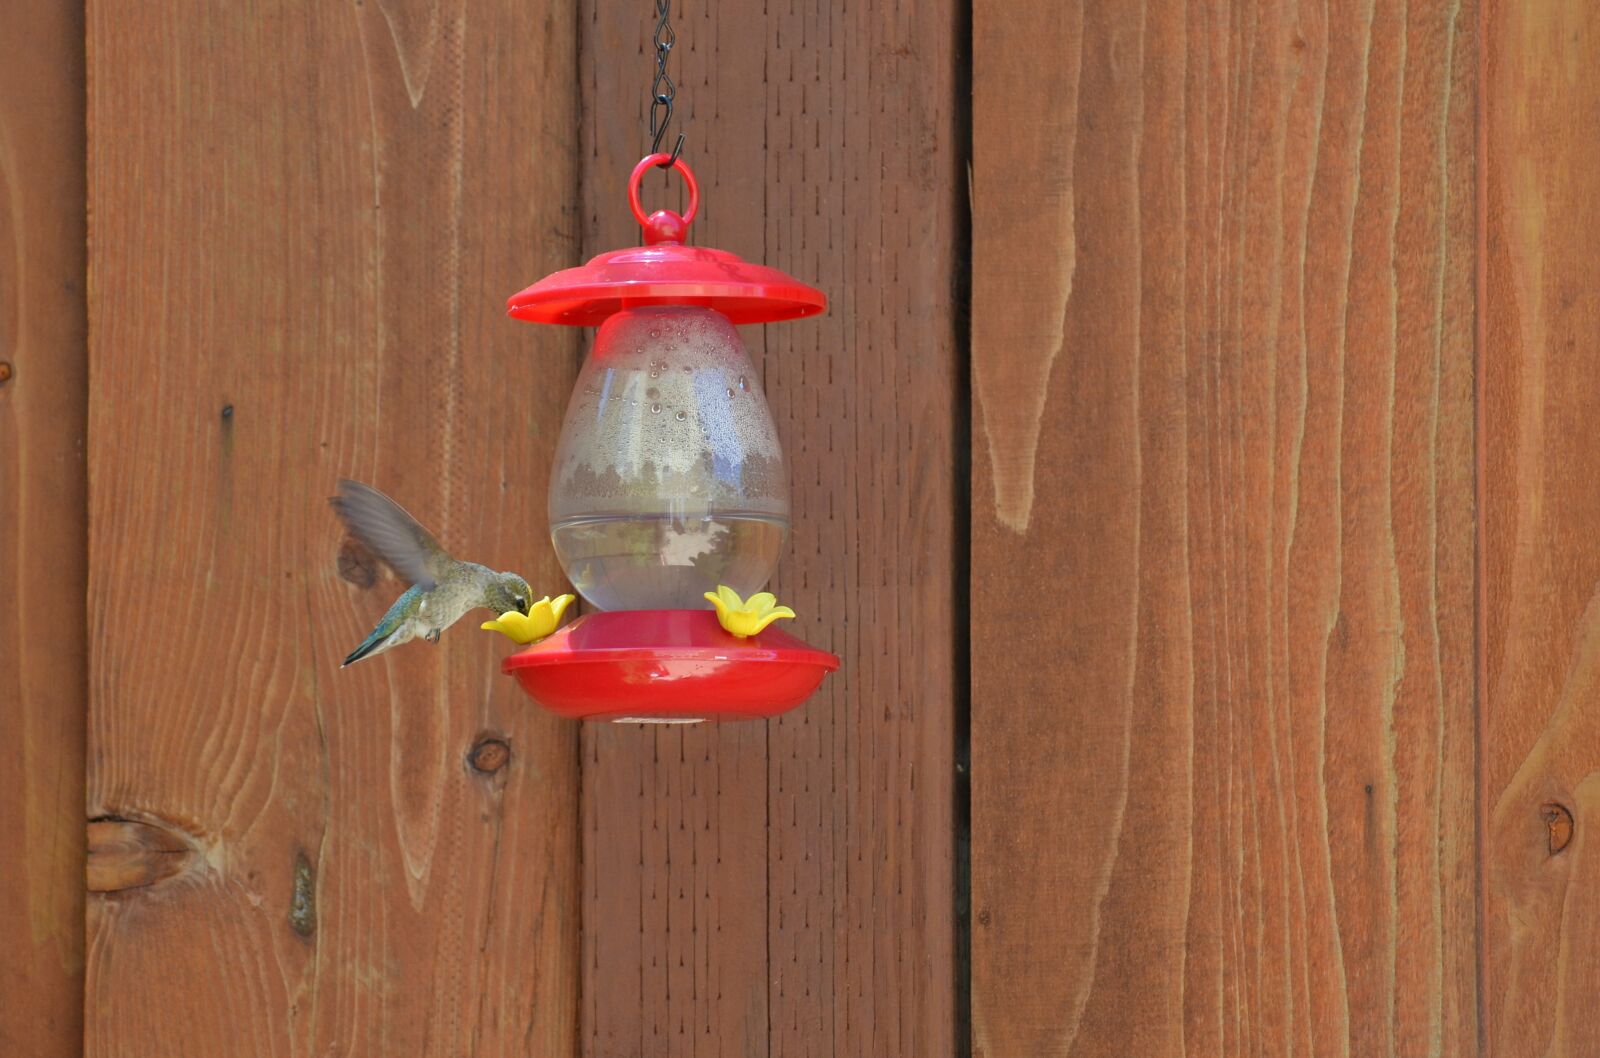 Nikon D5100 sample photo. Hummingbird feeder, nature, bird photography